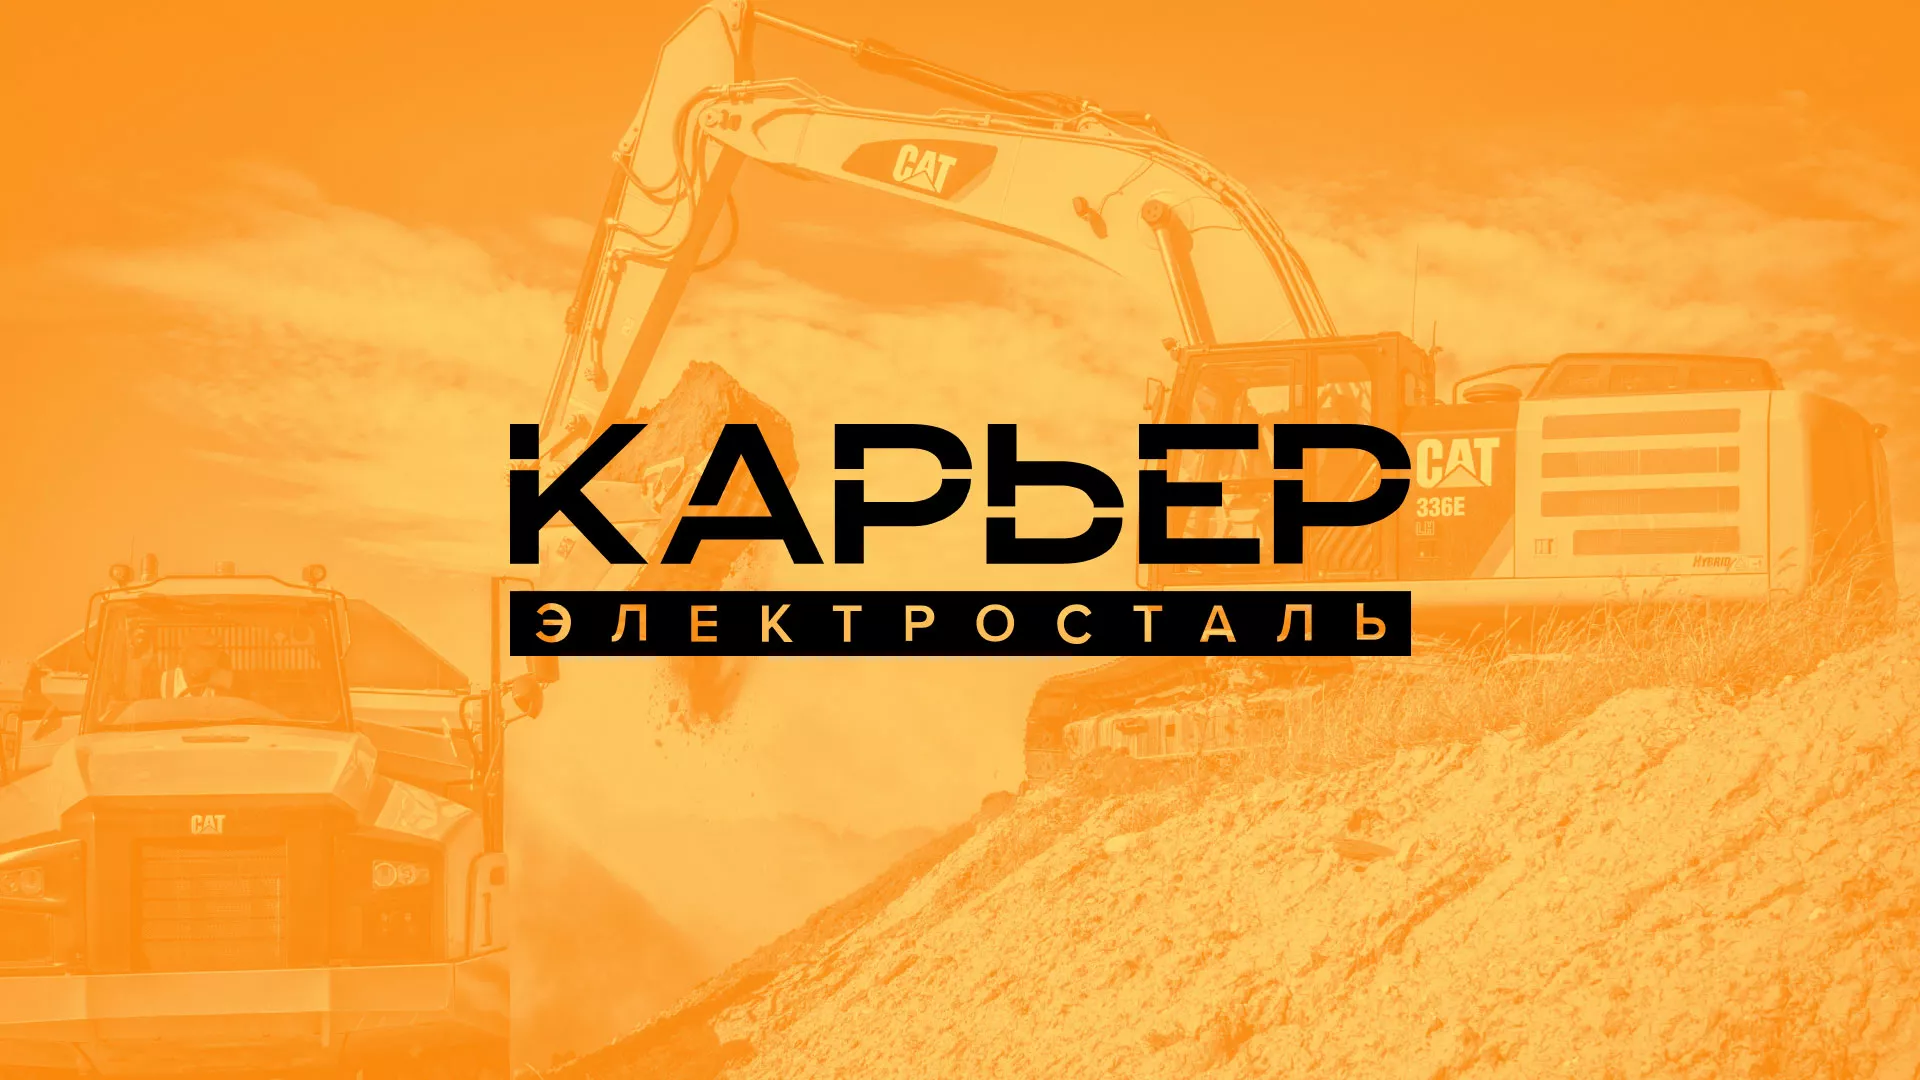 Разработка сайта по продаже нерудных материалов «Карьер» в Александрове